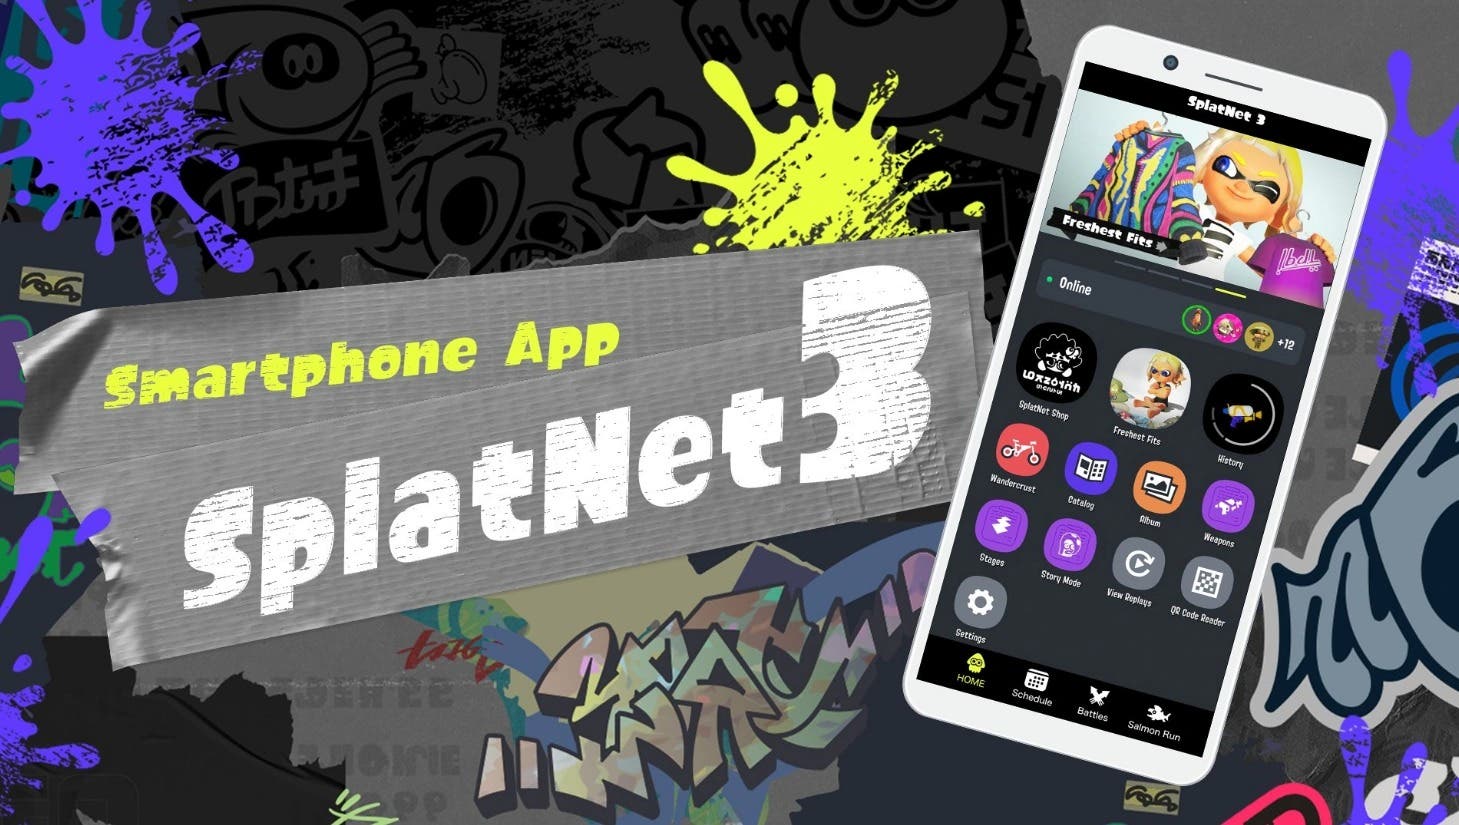 La app SplatNet 3 de Splatoon 3 recibe una nueva actualización